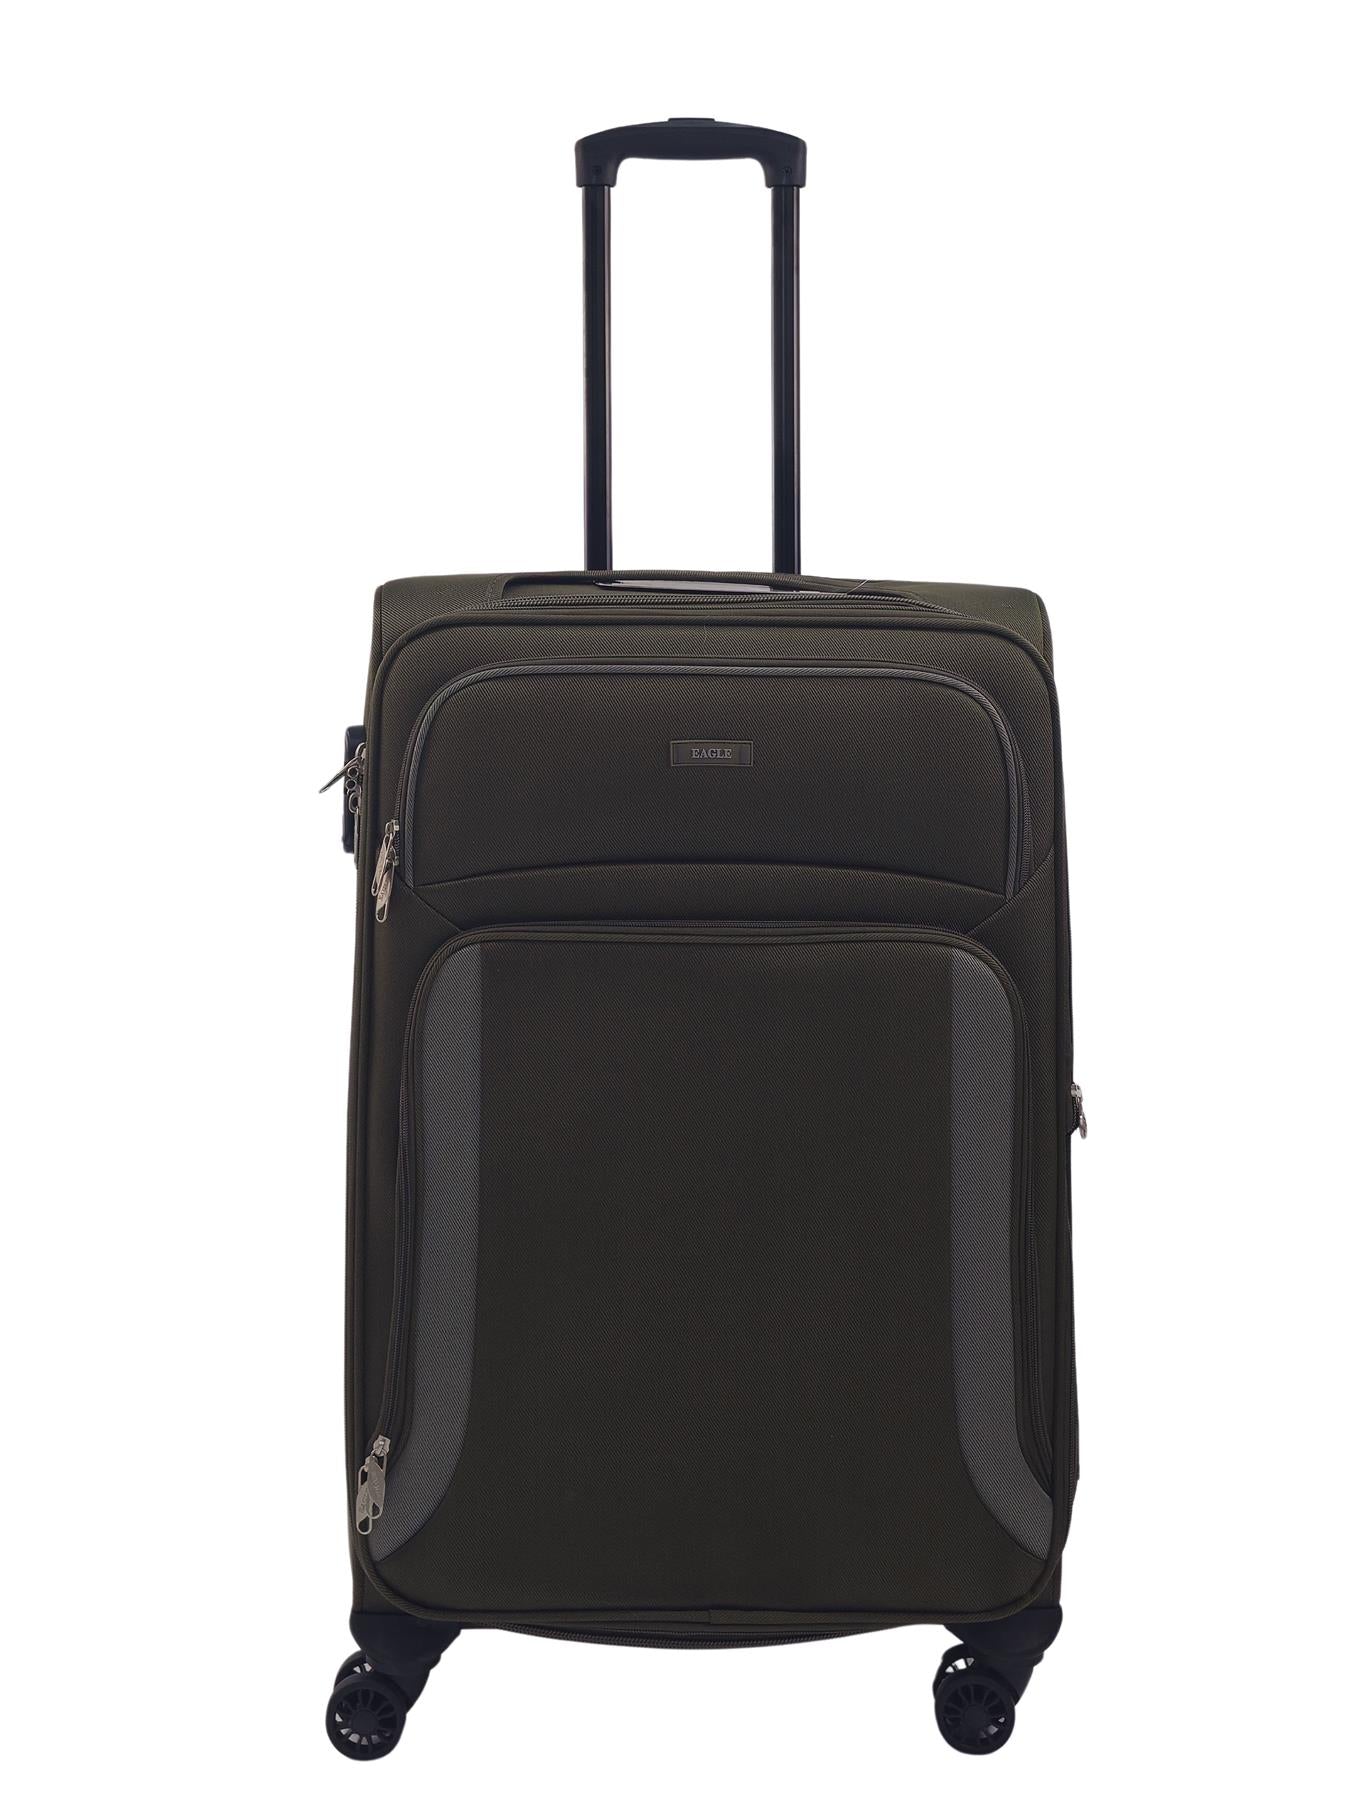 Ashland Medium Soft Shell Suitcase in Khaki